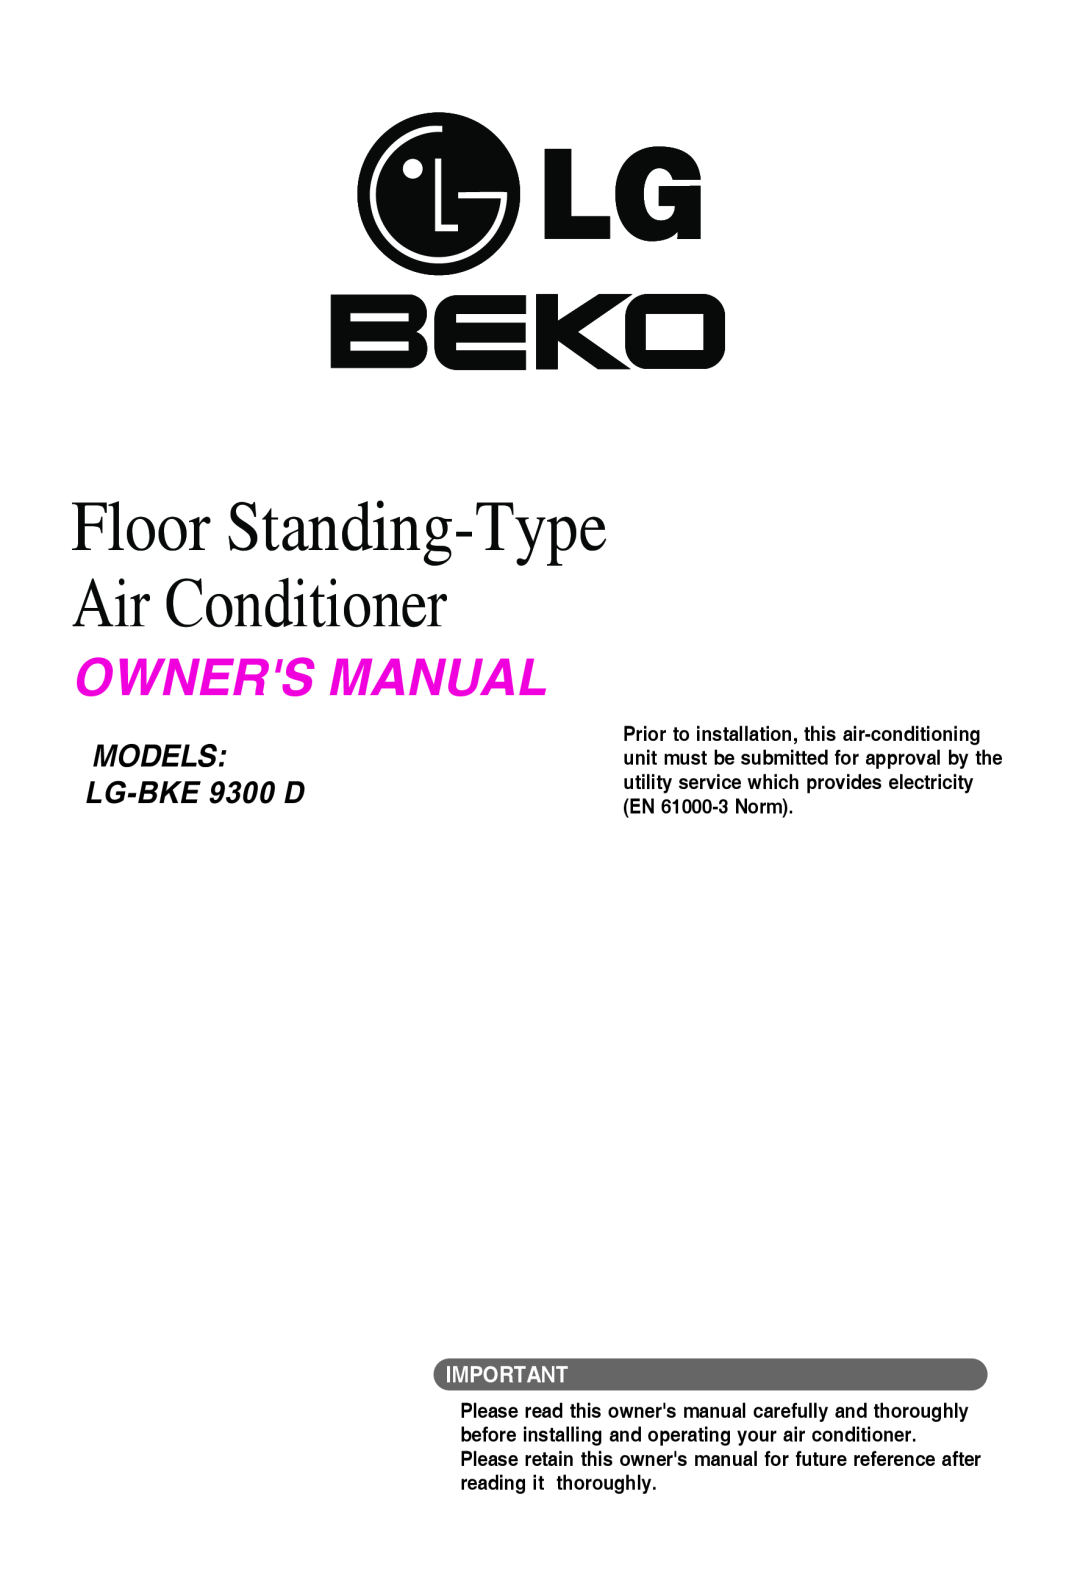 Beko LG-BKE 9300 D owner manual Models, Floor Standing-TypeAir Conditioner, LG-BKE9300 D 